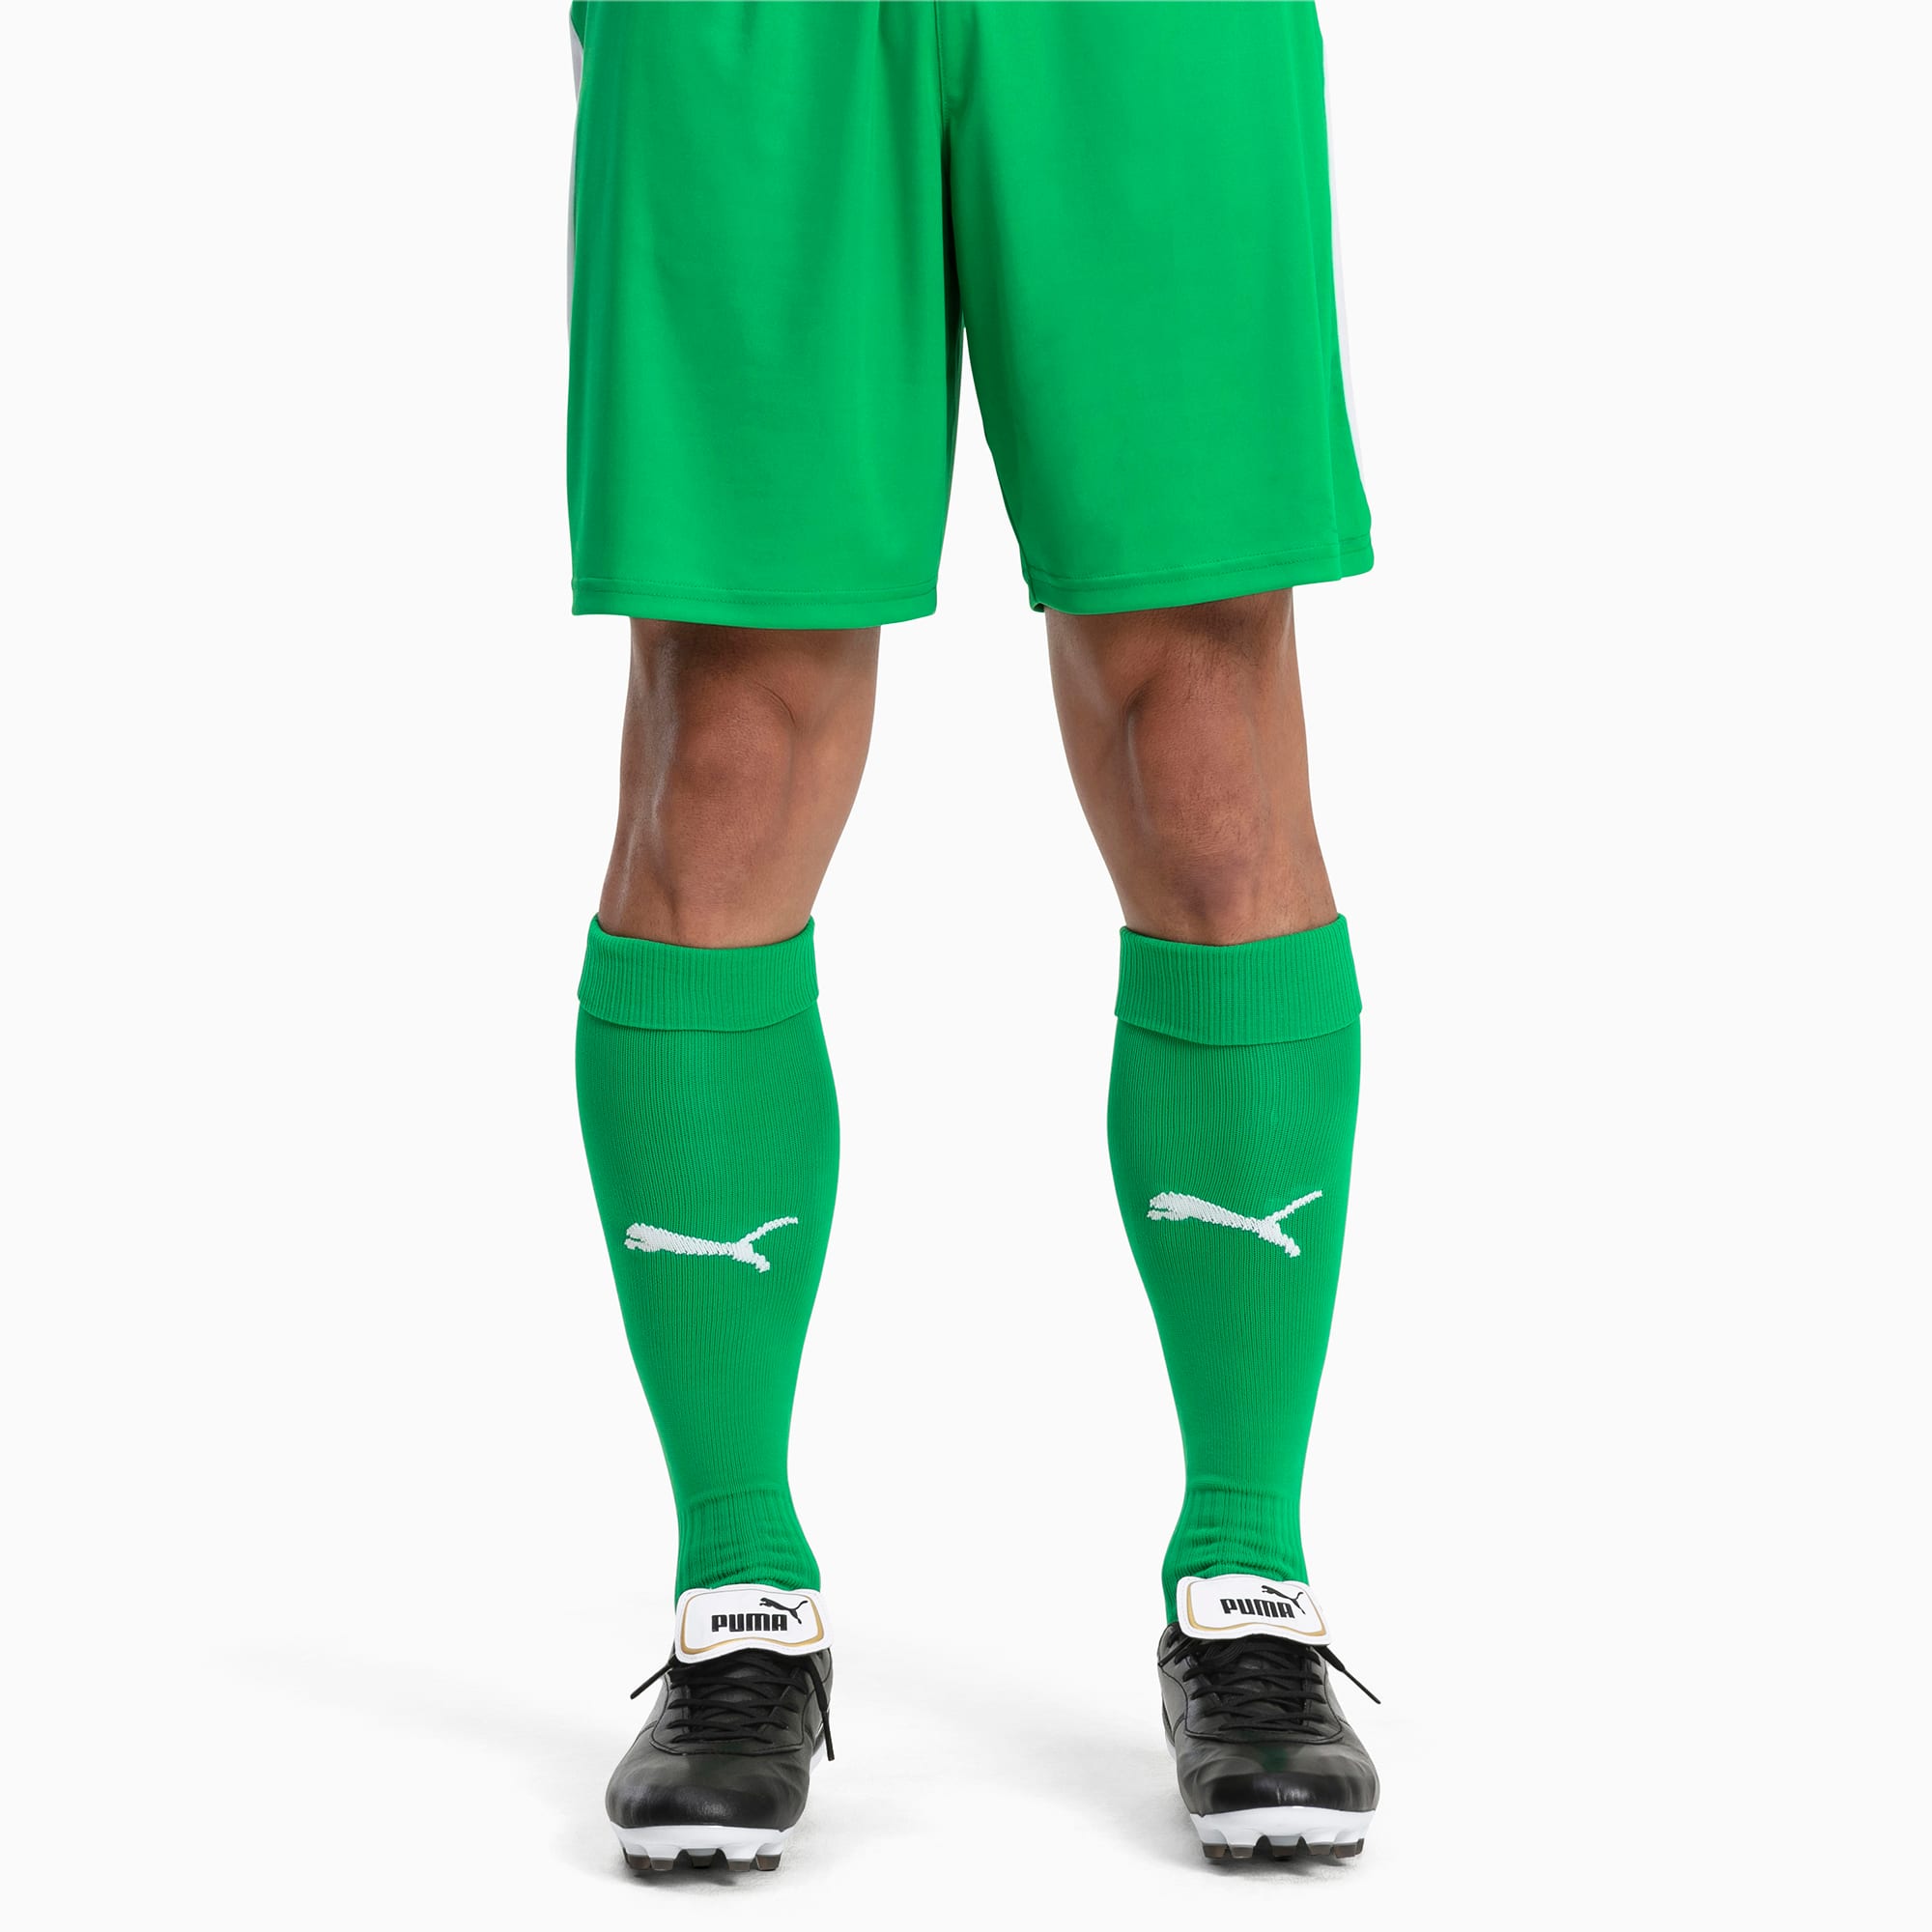 Image of PUMA Fußball Herren LIGA Core Socken | Mit Aucun | Grün/Weiß | Größe: 27-30